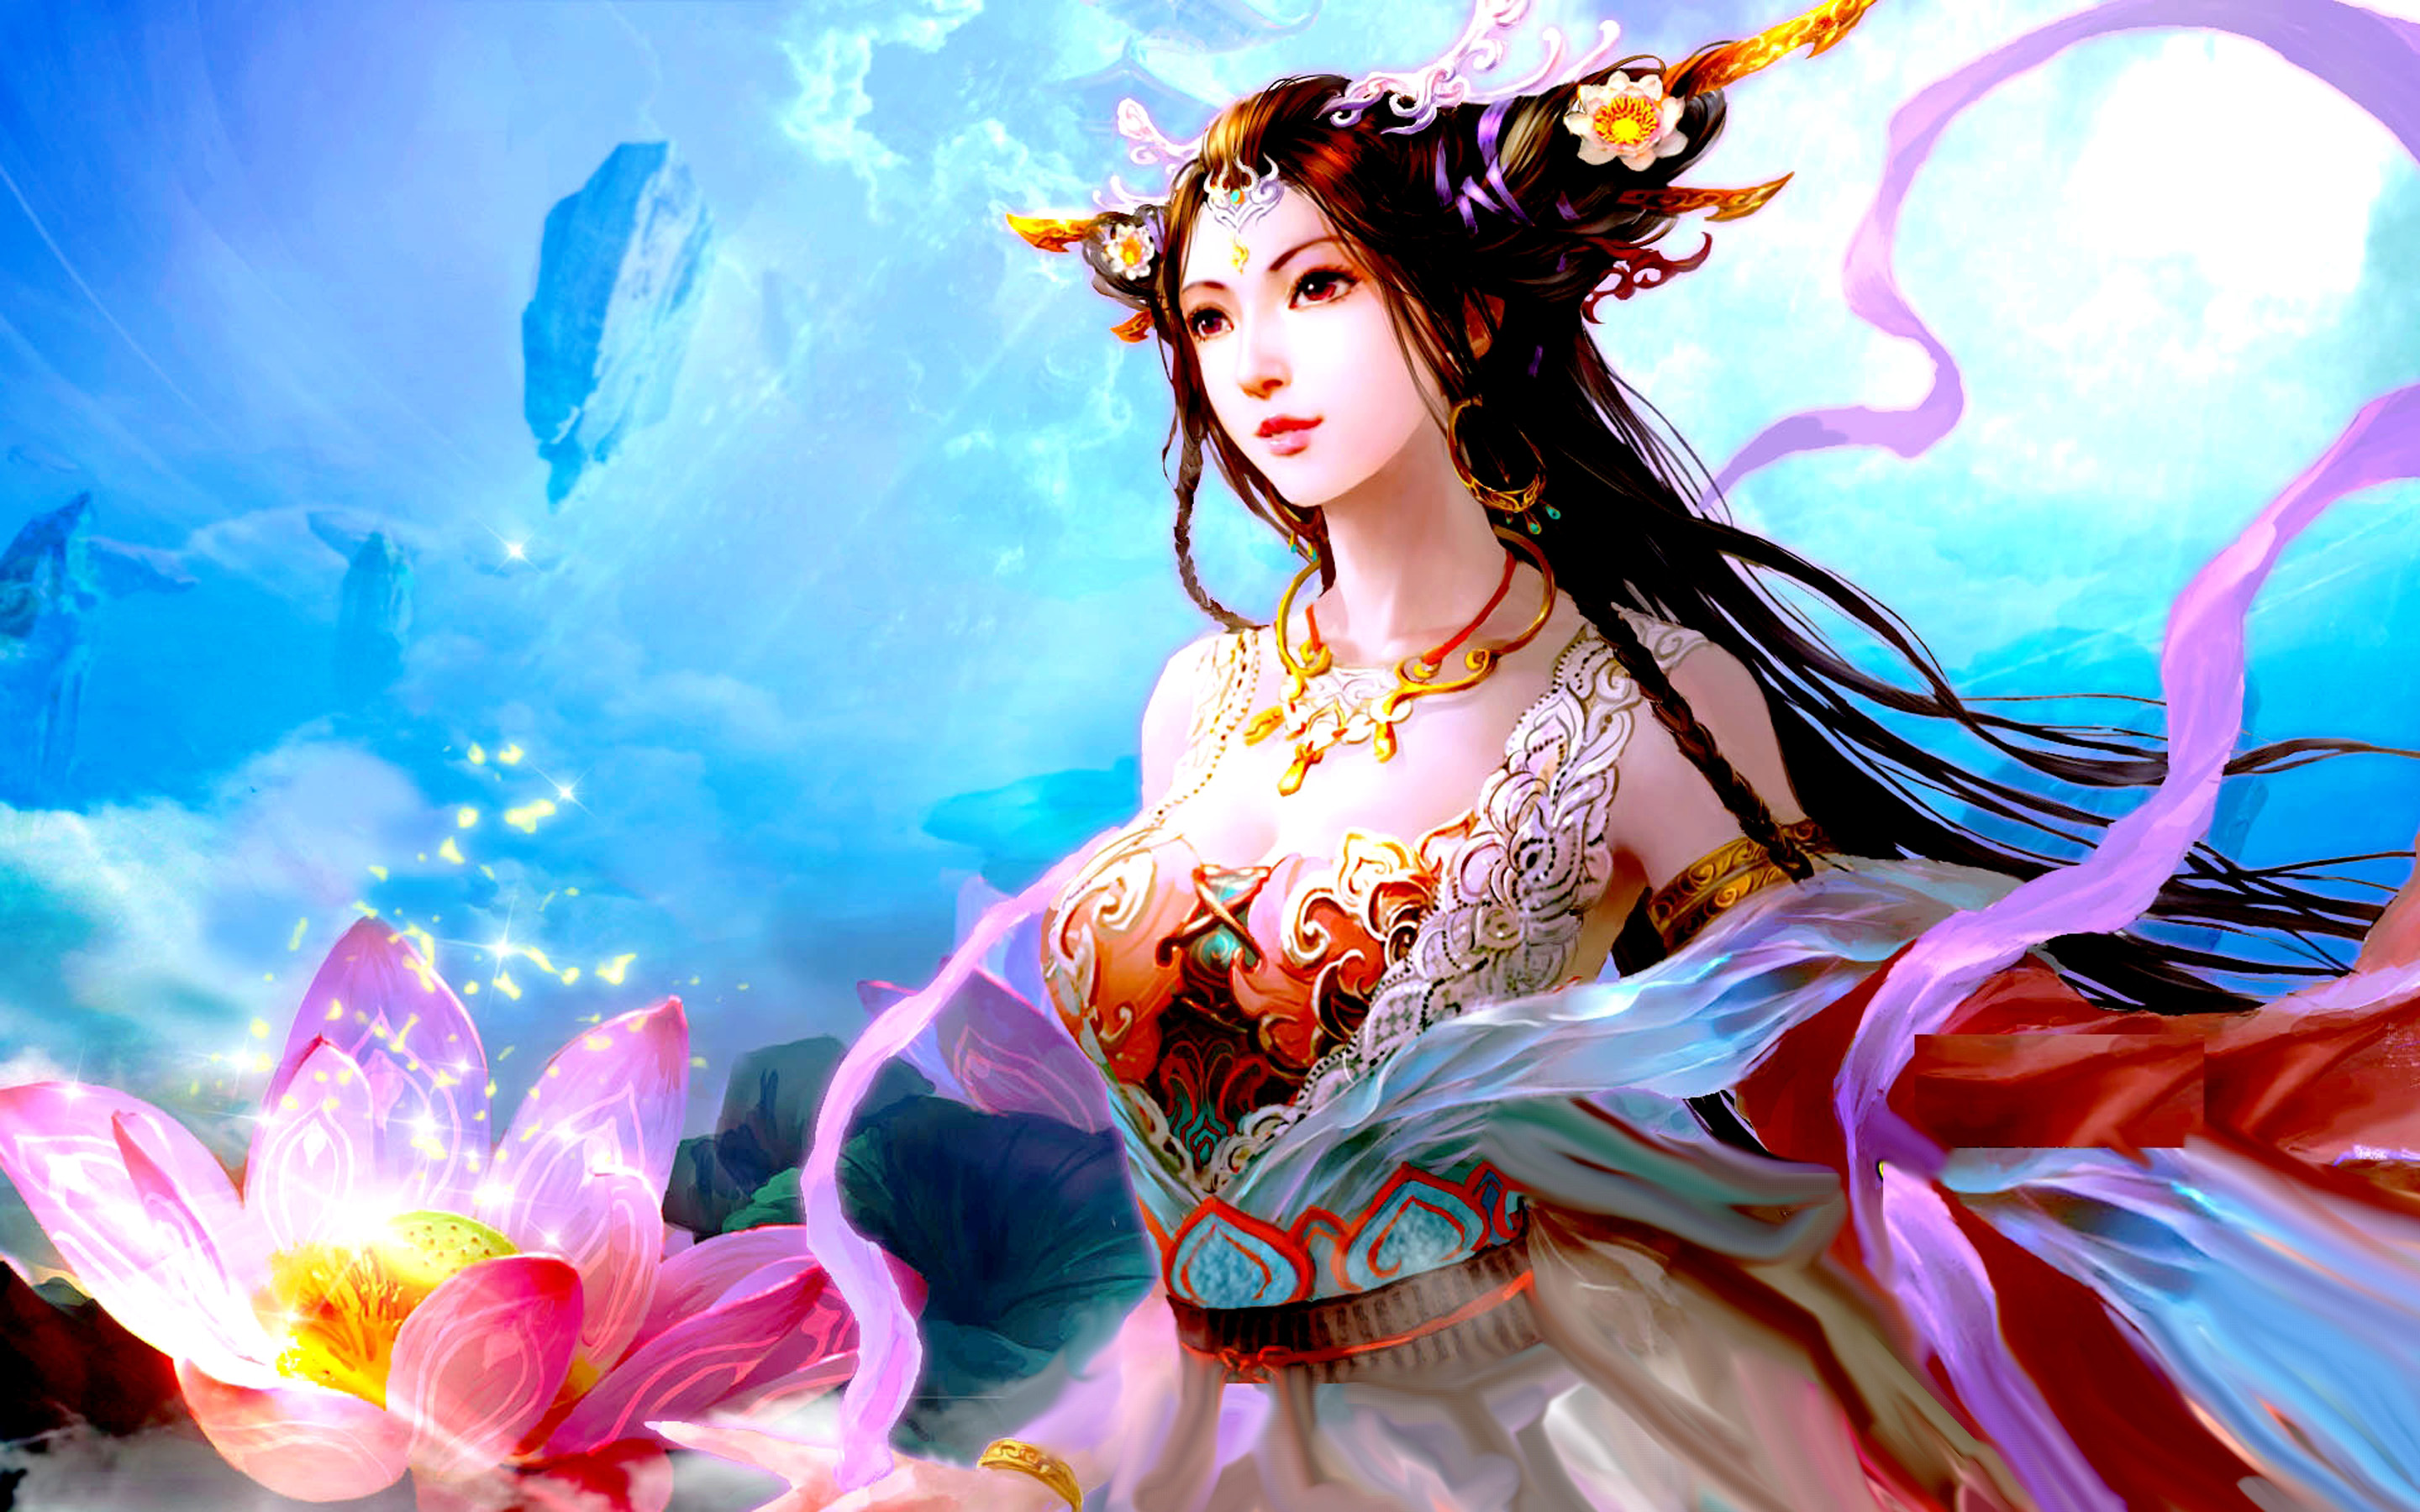 Beautiful Asian girl with black hair Lotus pink color colored silk dress fantasy art wallpaper HD 2880x1800, Wallpaper13.com